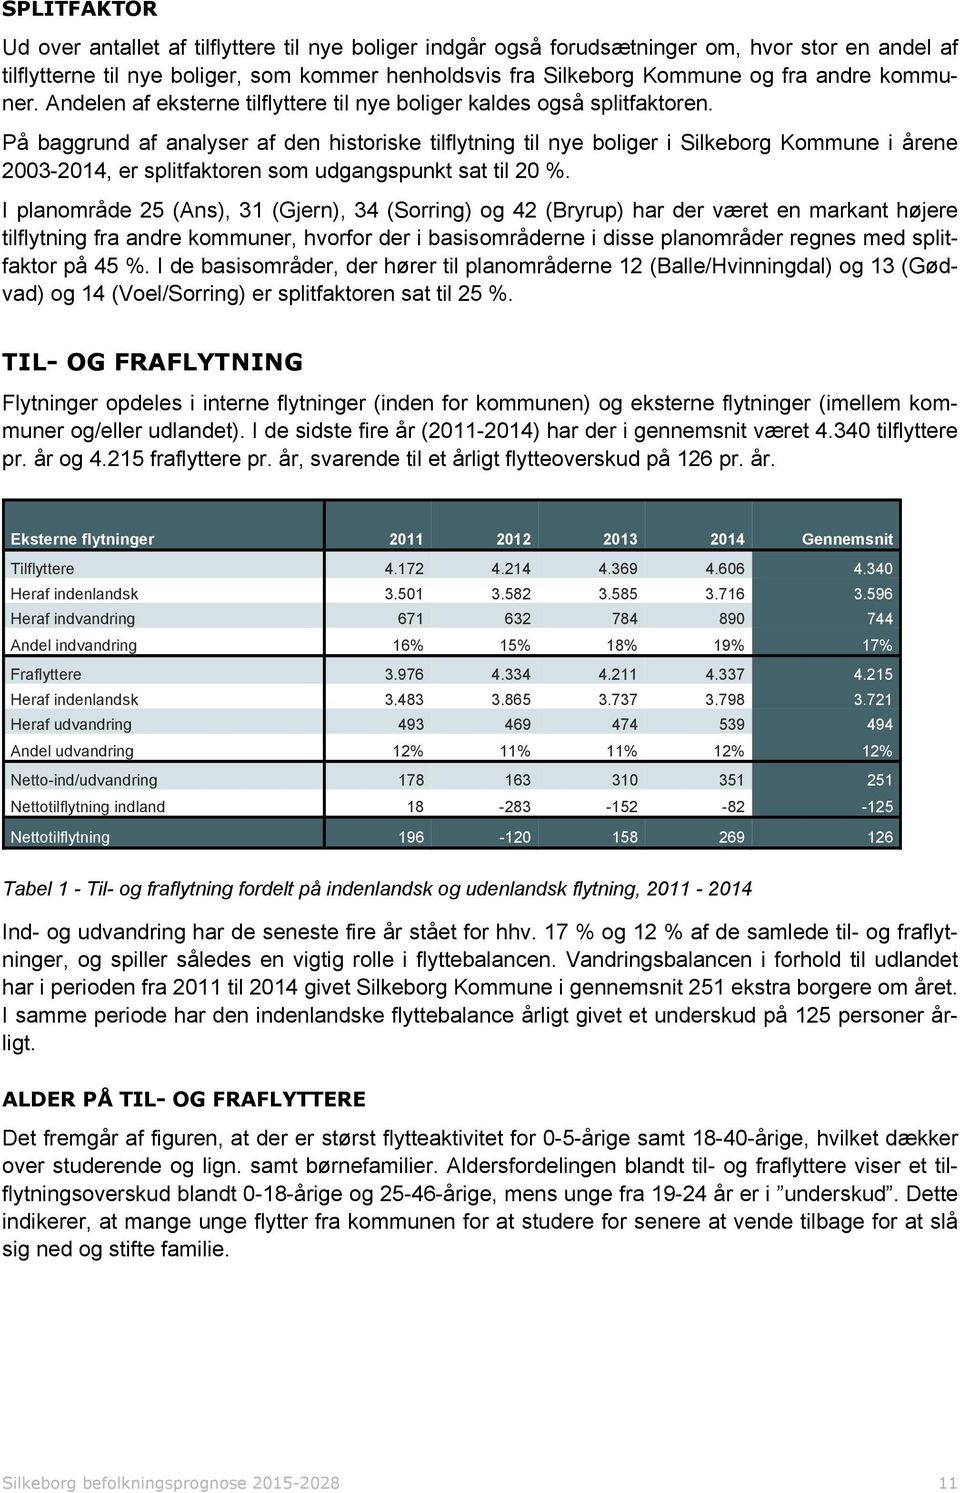 På baggrund af analyser af den historiske tilflytning til nye boliger i Silkeborg Kommune i årene 2003-2014, er splitfaktoren som udgangspunkt sat til 20 %.